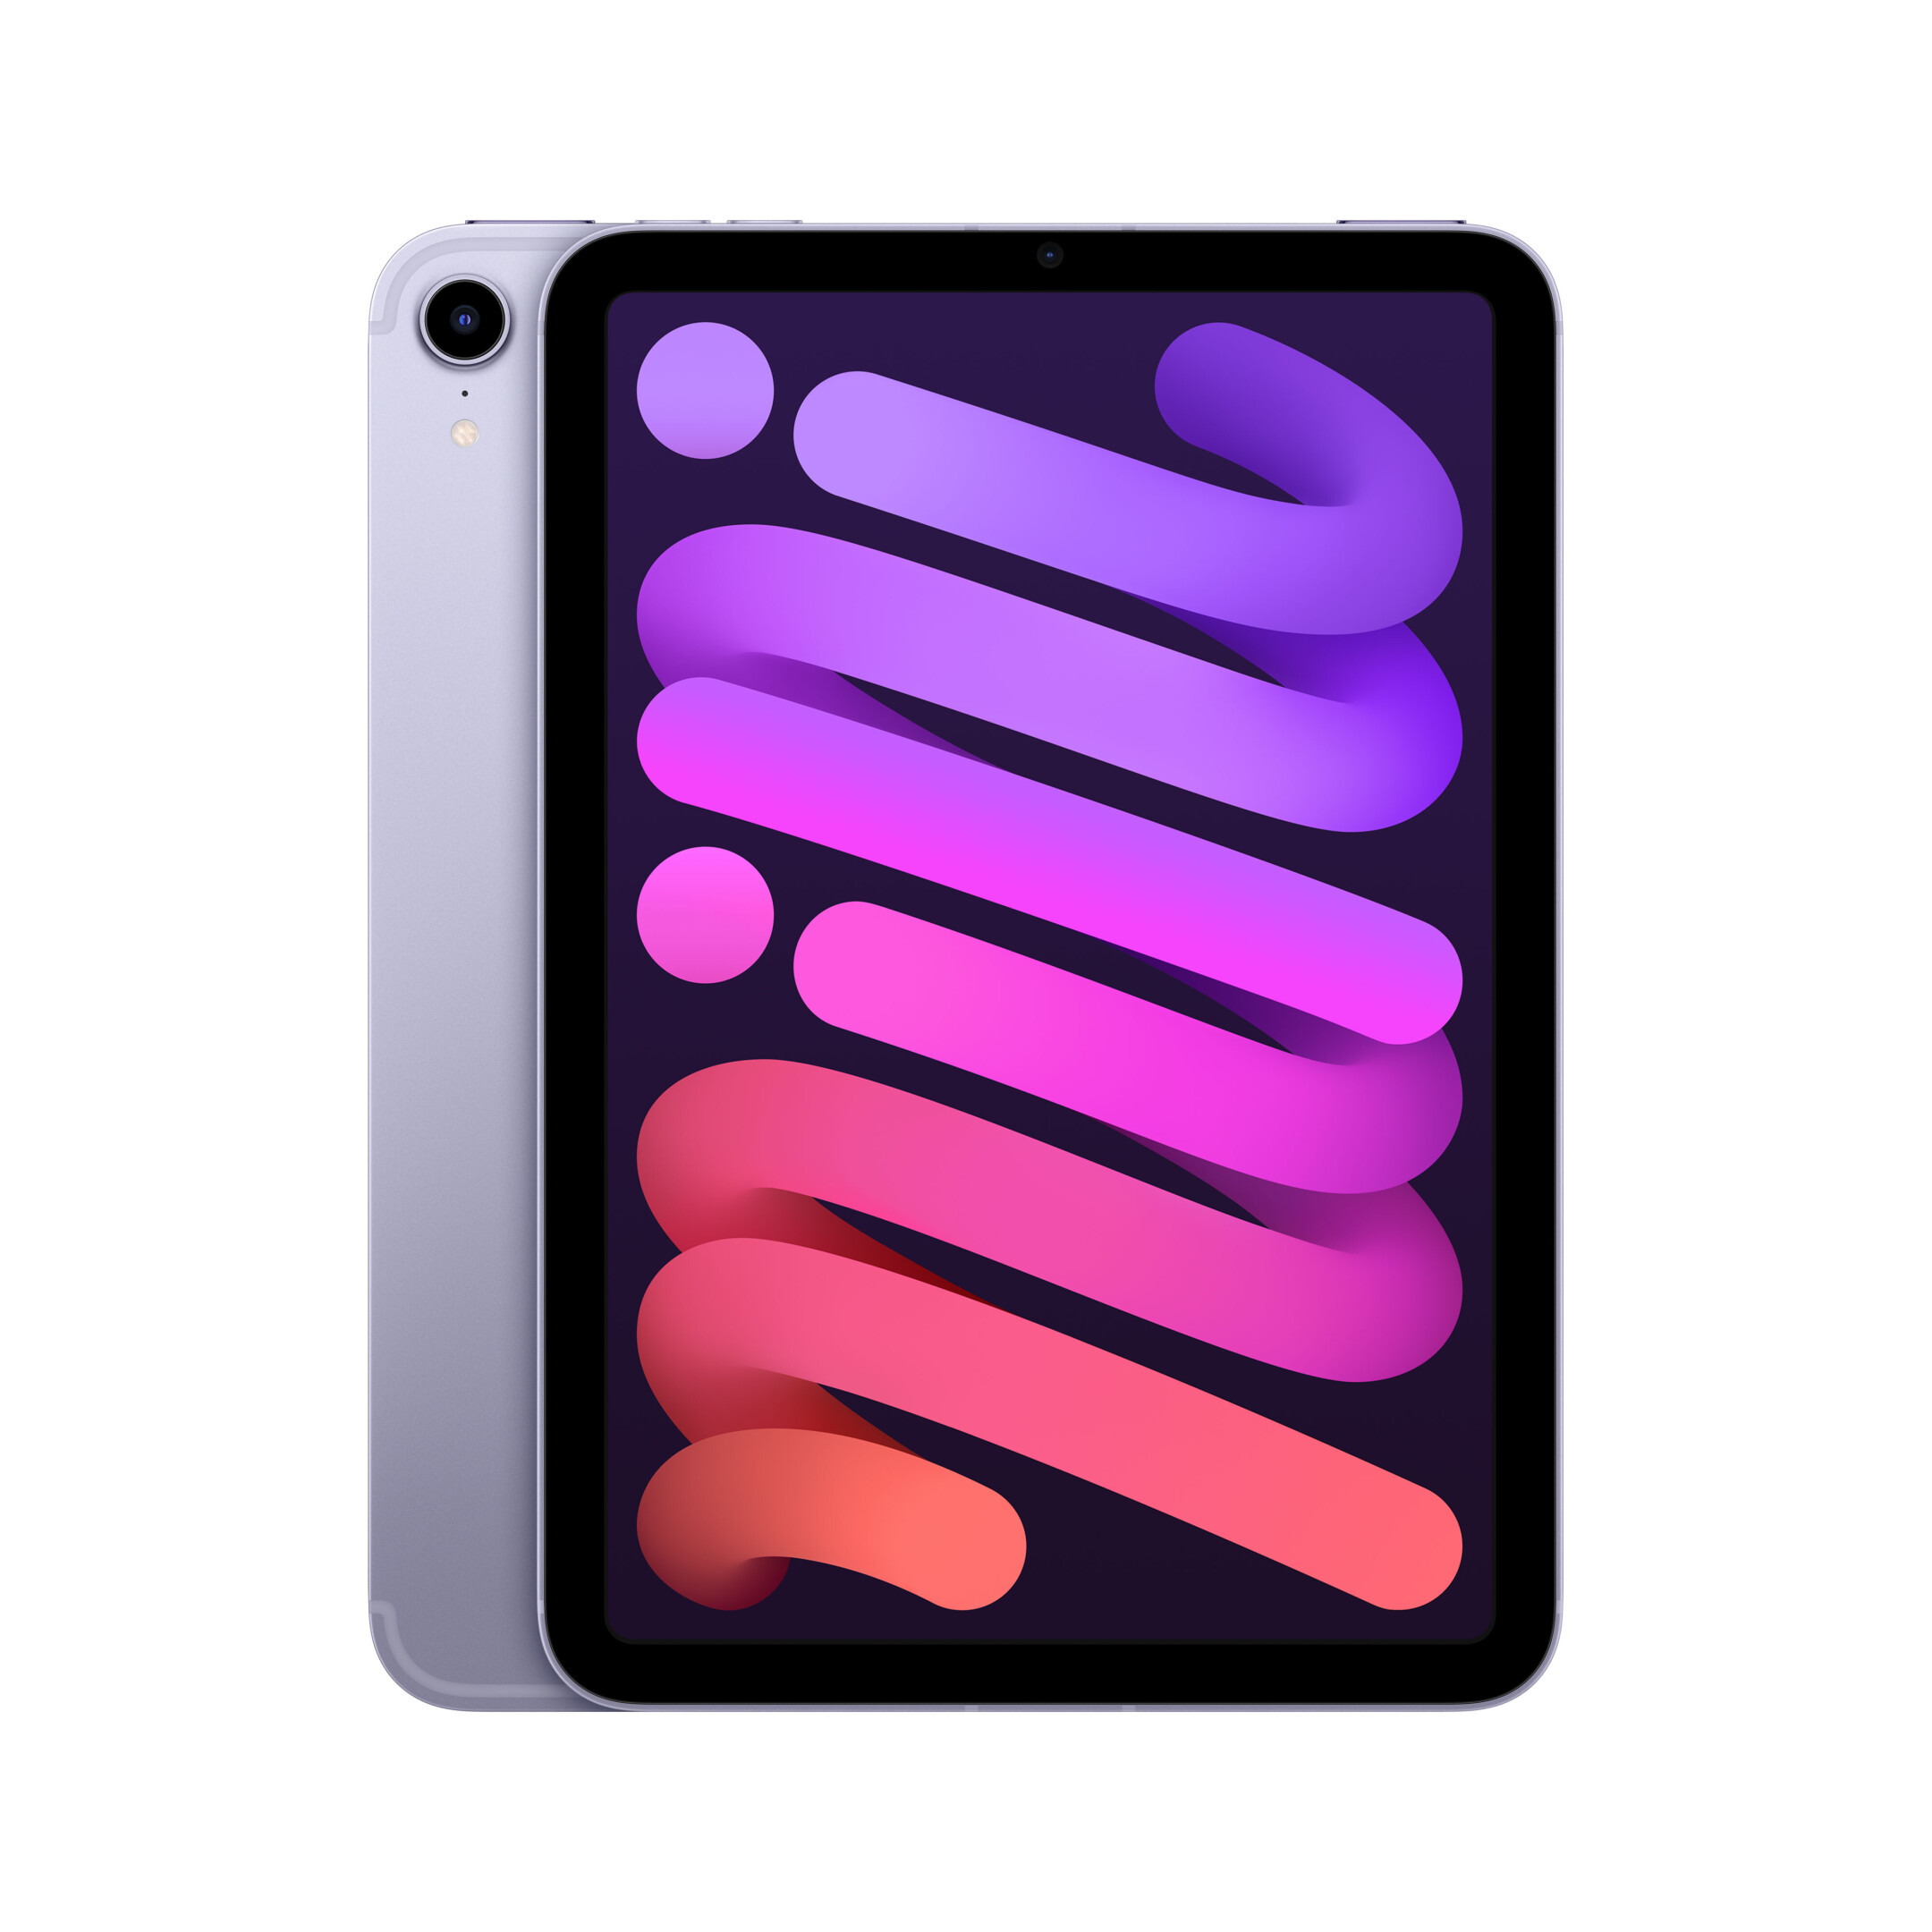 Apple-iPad-mini-8-3-WiFi-Cellular-64-GB-Violett-6-Generation-2021